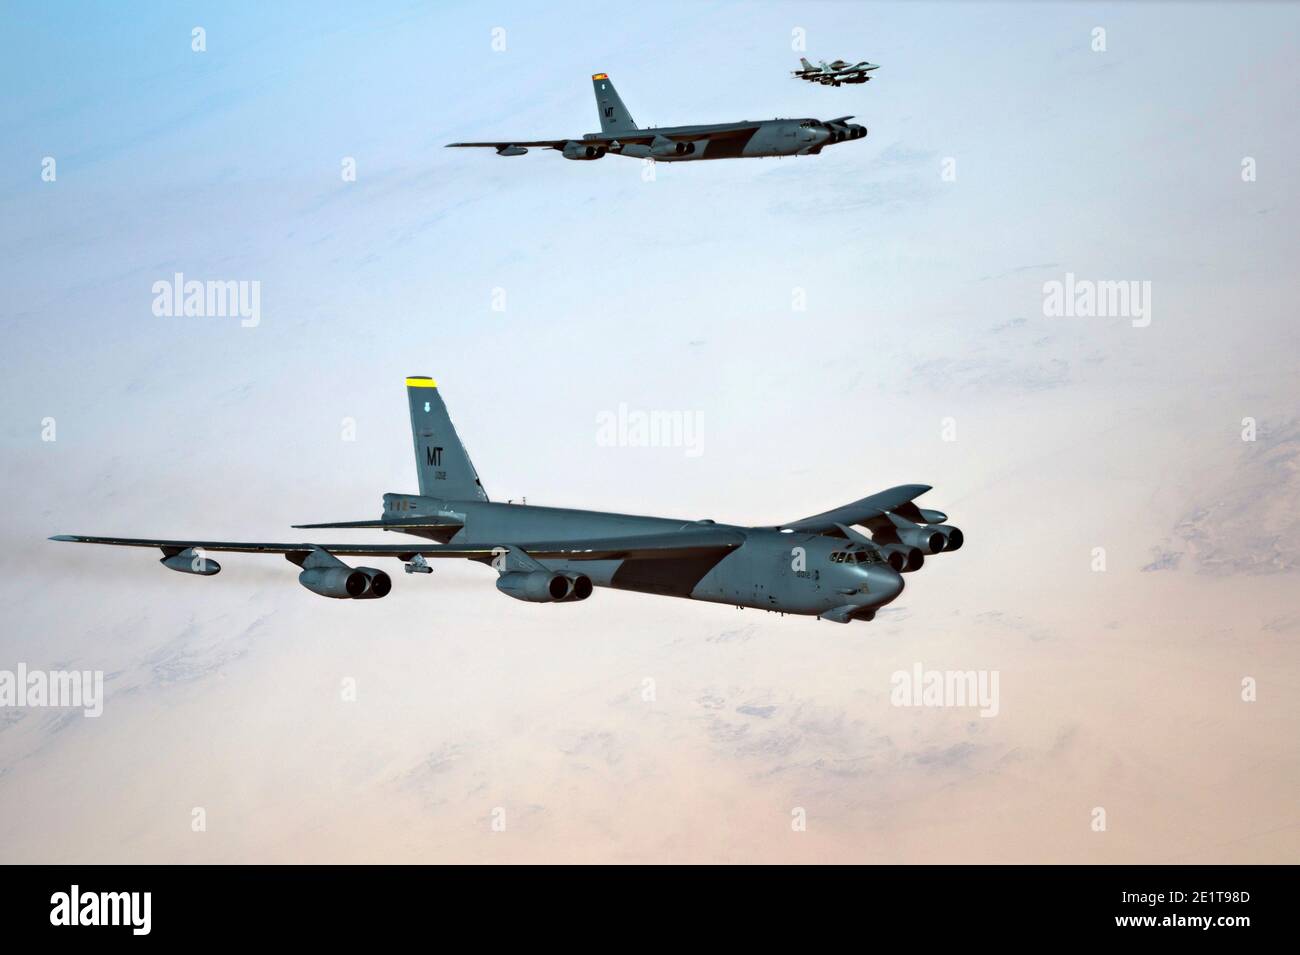 Saudi-Arabien, Saudi-Arabien. Januar 2021. Die strategischen Bomberflugzeuge der US Air Force B-52 Stratofortress werden von den F-16 Kampfflugzeugen der US Air Force begleitet, die Falcon bekämpfen, während sie den saudischen Luftraum am 7. Januar 2021 in Saudi-Arabien überfliegen. Der Bomber und die Eskorte sind eine Show der Force Mission als Botschaft an den Iran. Quelle: Planetpix/Alamy Live News Stockfoto